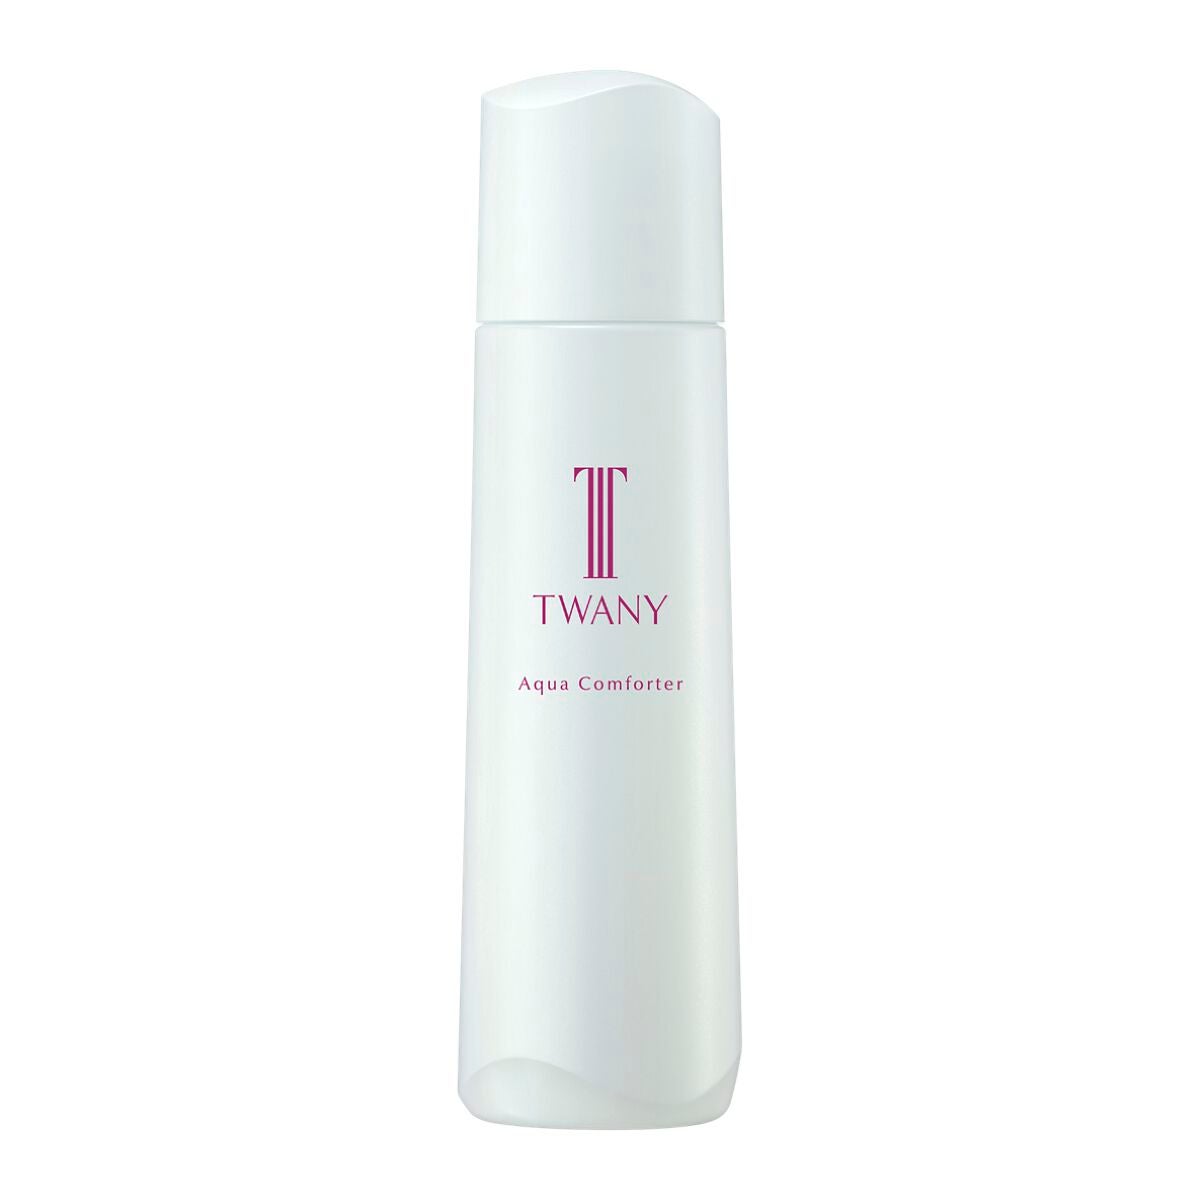 TWANY(トワニー)の化粧水9選 | 人気商品から新作アイテムまで全 